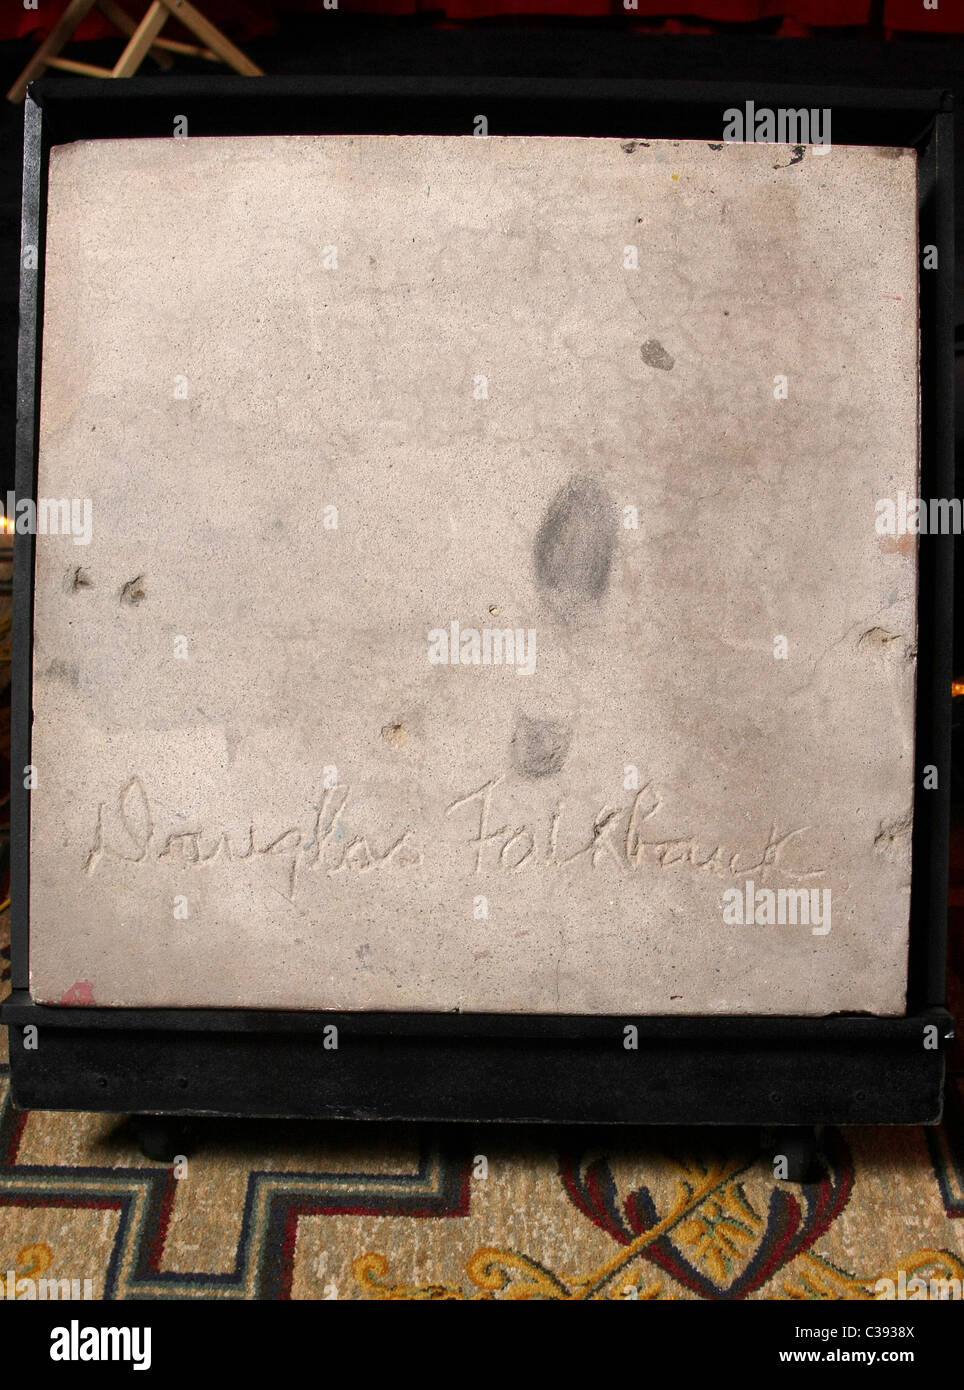 DOUGLAS FAIRBANKS originale dimenticato le impronte di cemento dal Grauman cinese del cortile. TCM CLASSIC FILM FESTIVAL 2011 LO Foto Stock